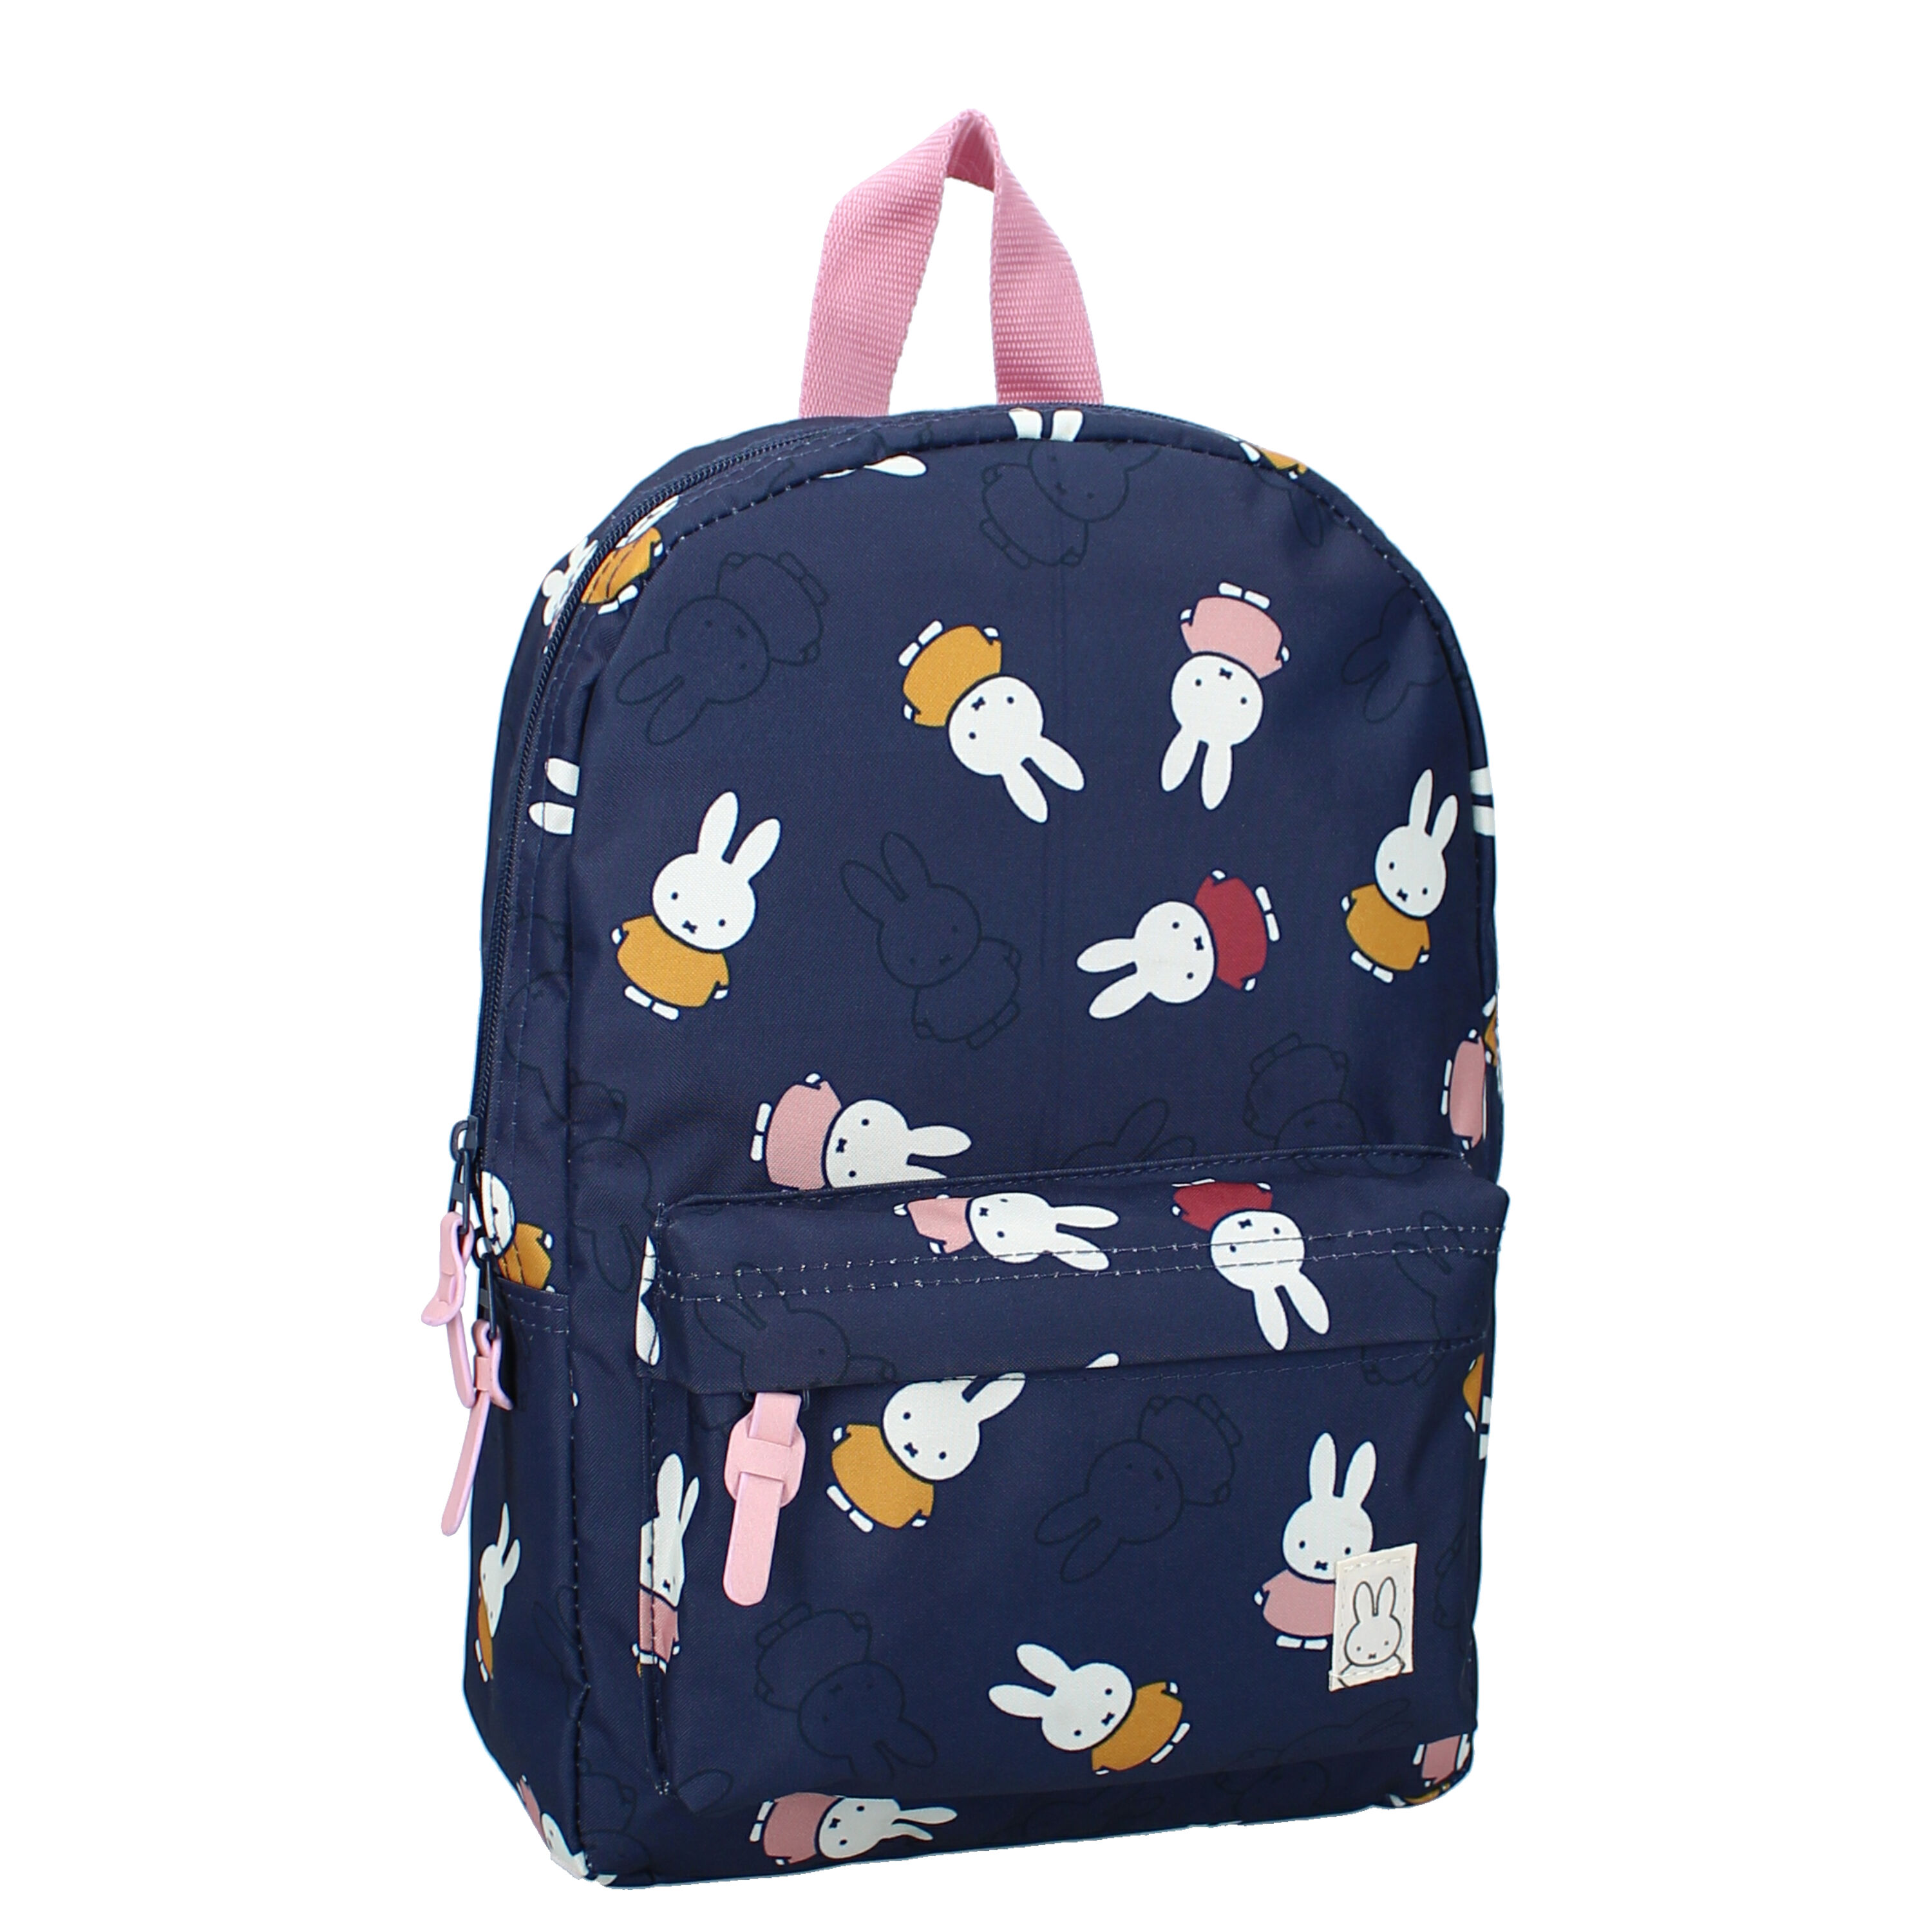 Miffy Backpack Little Explorer